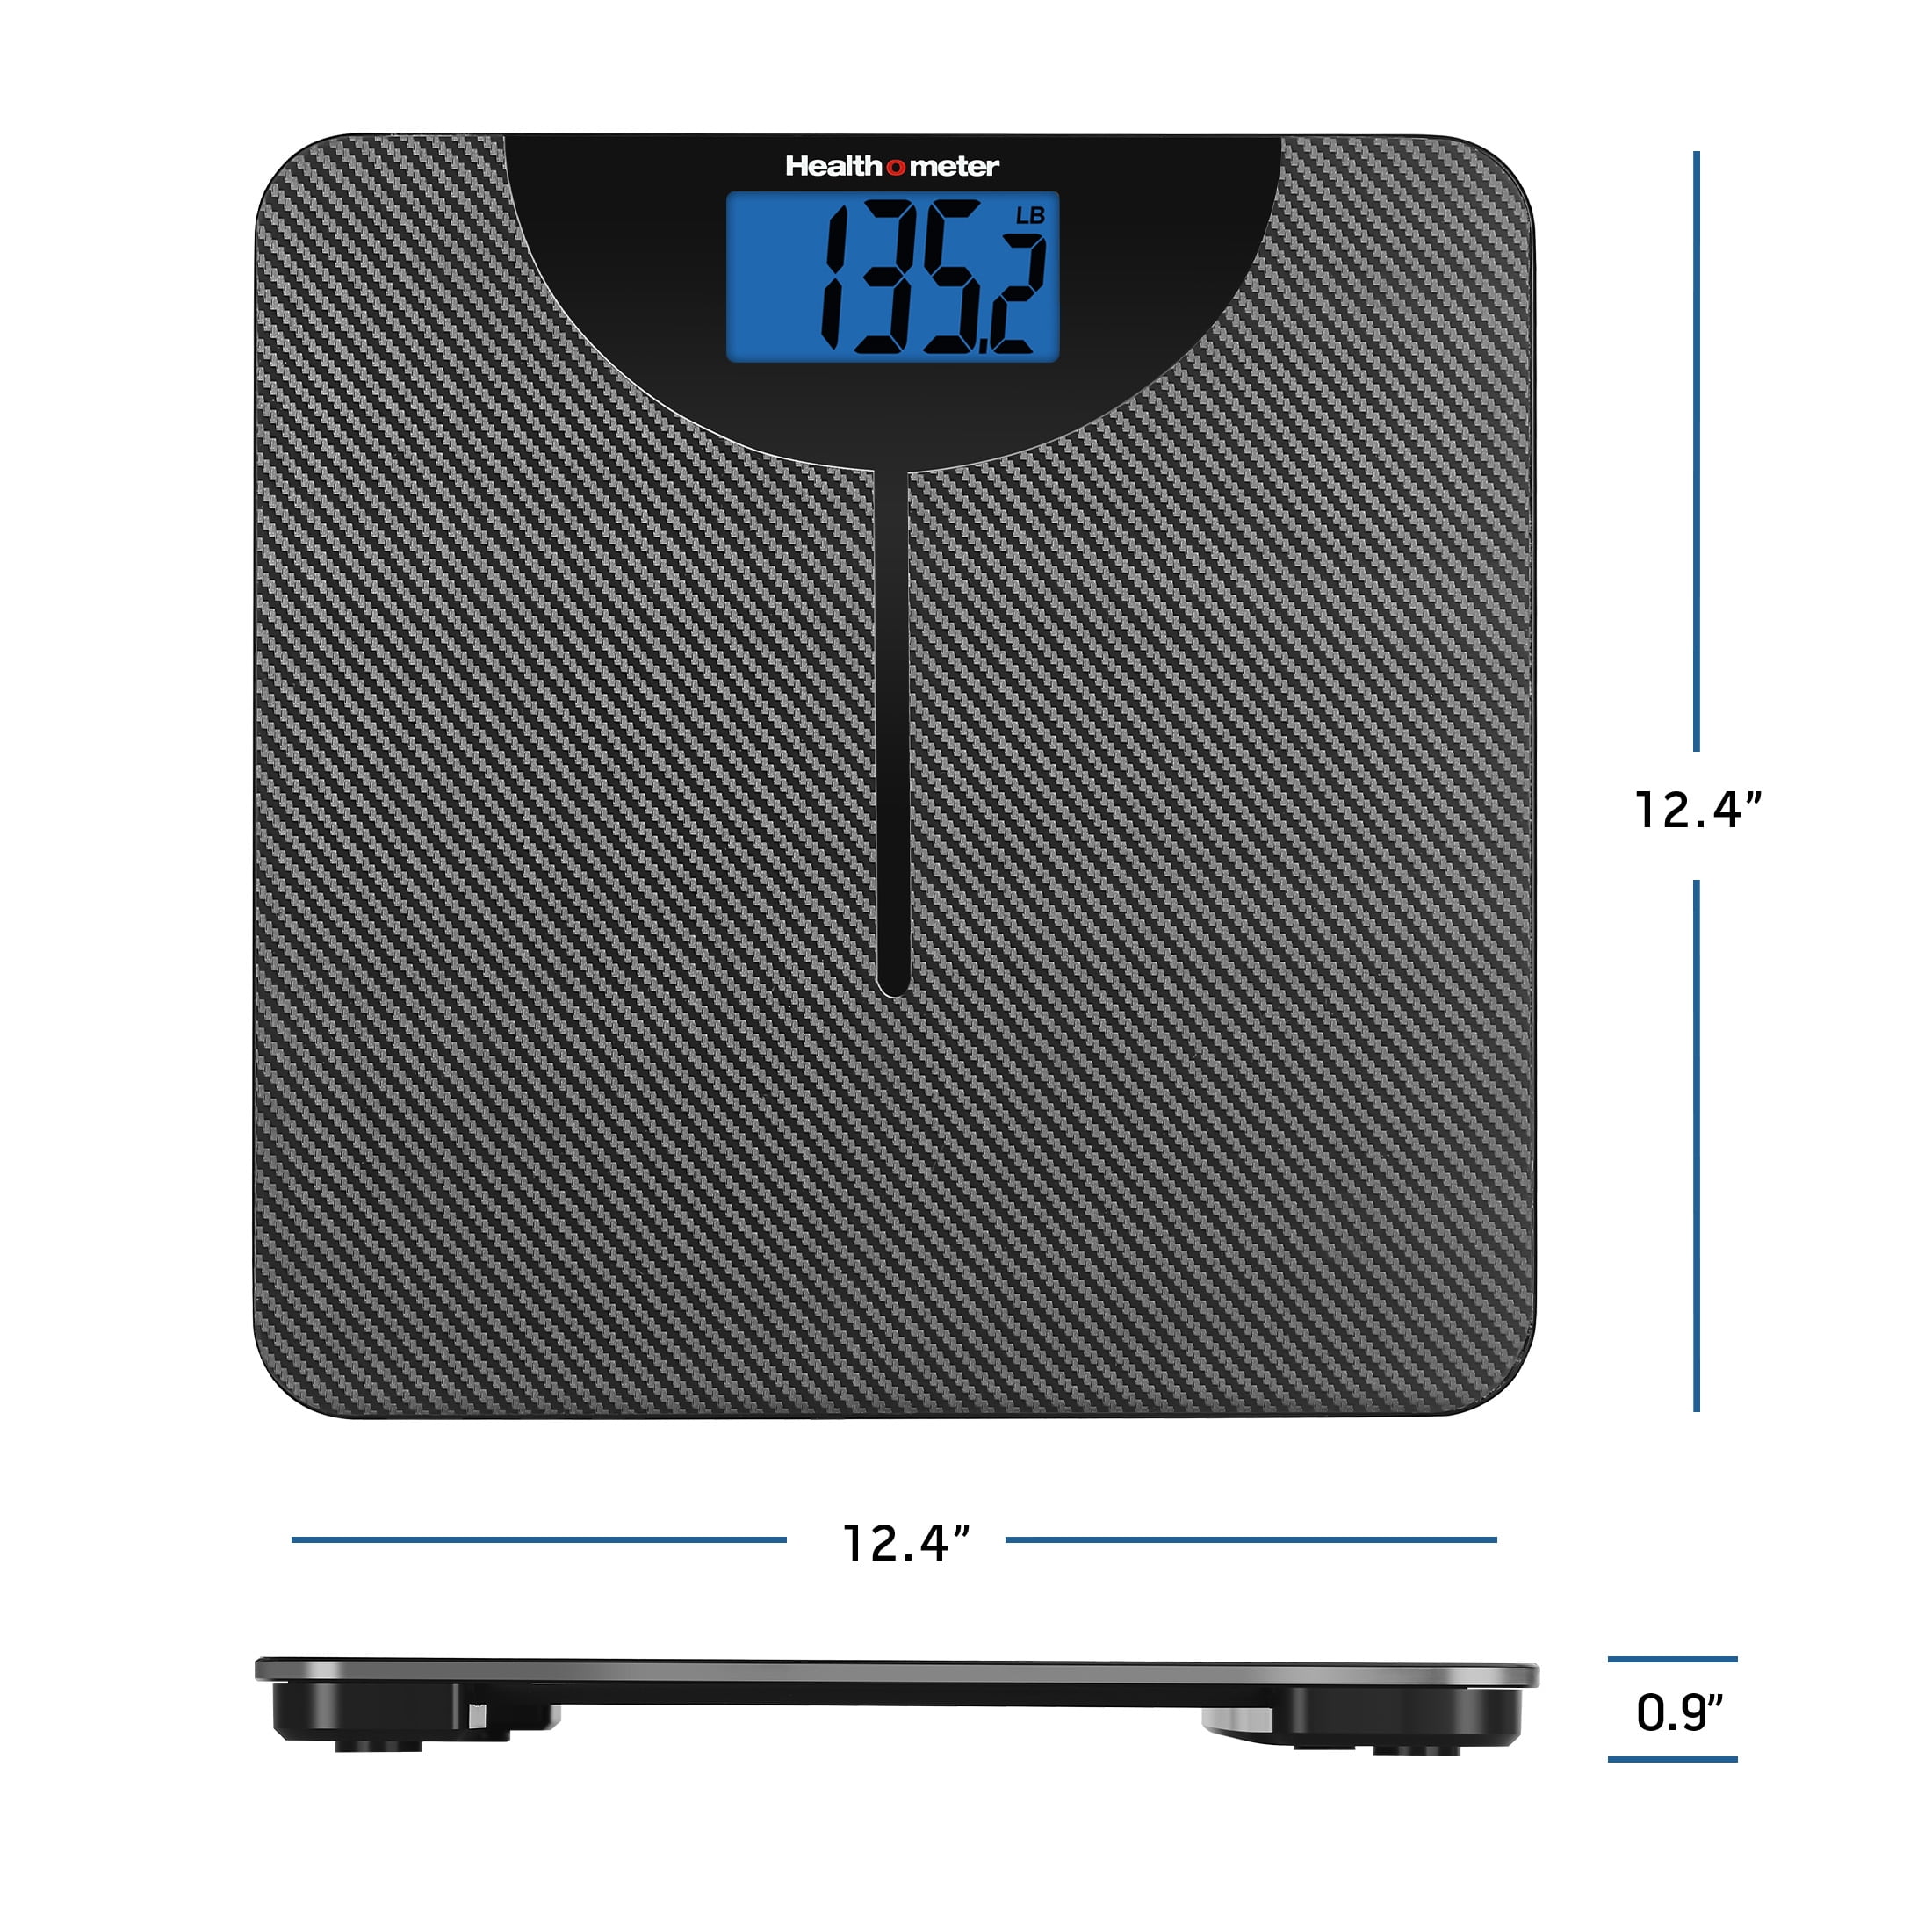 Health O Meter - Floor Scale Digital Audio Display 400 lbs.